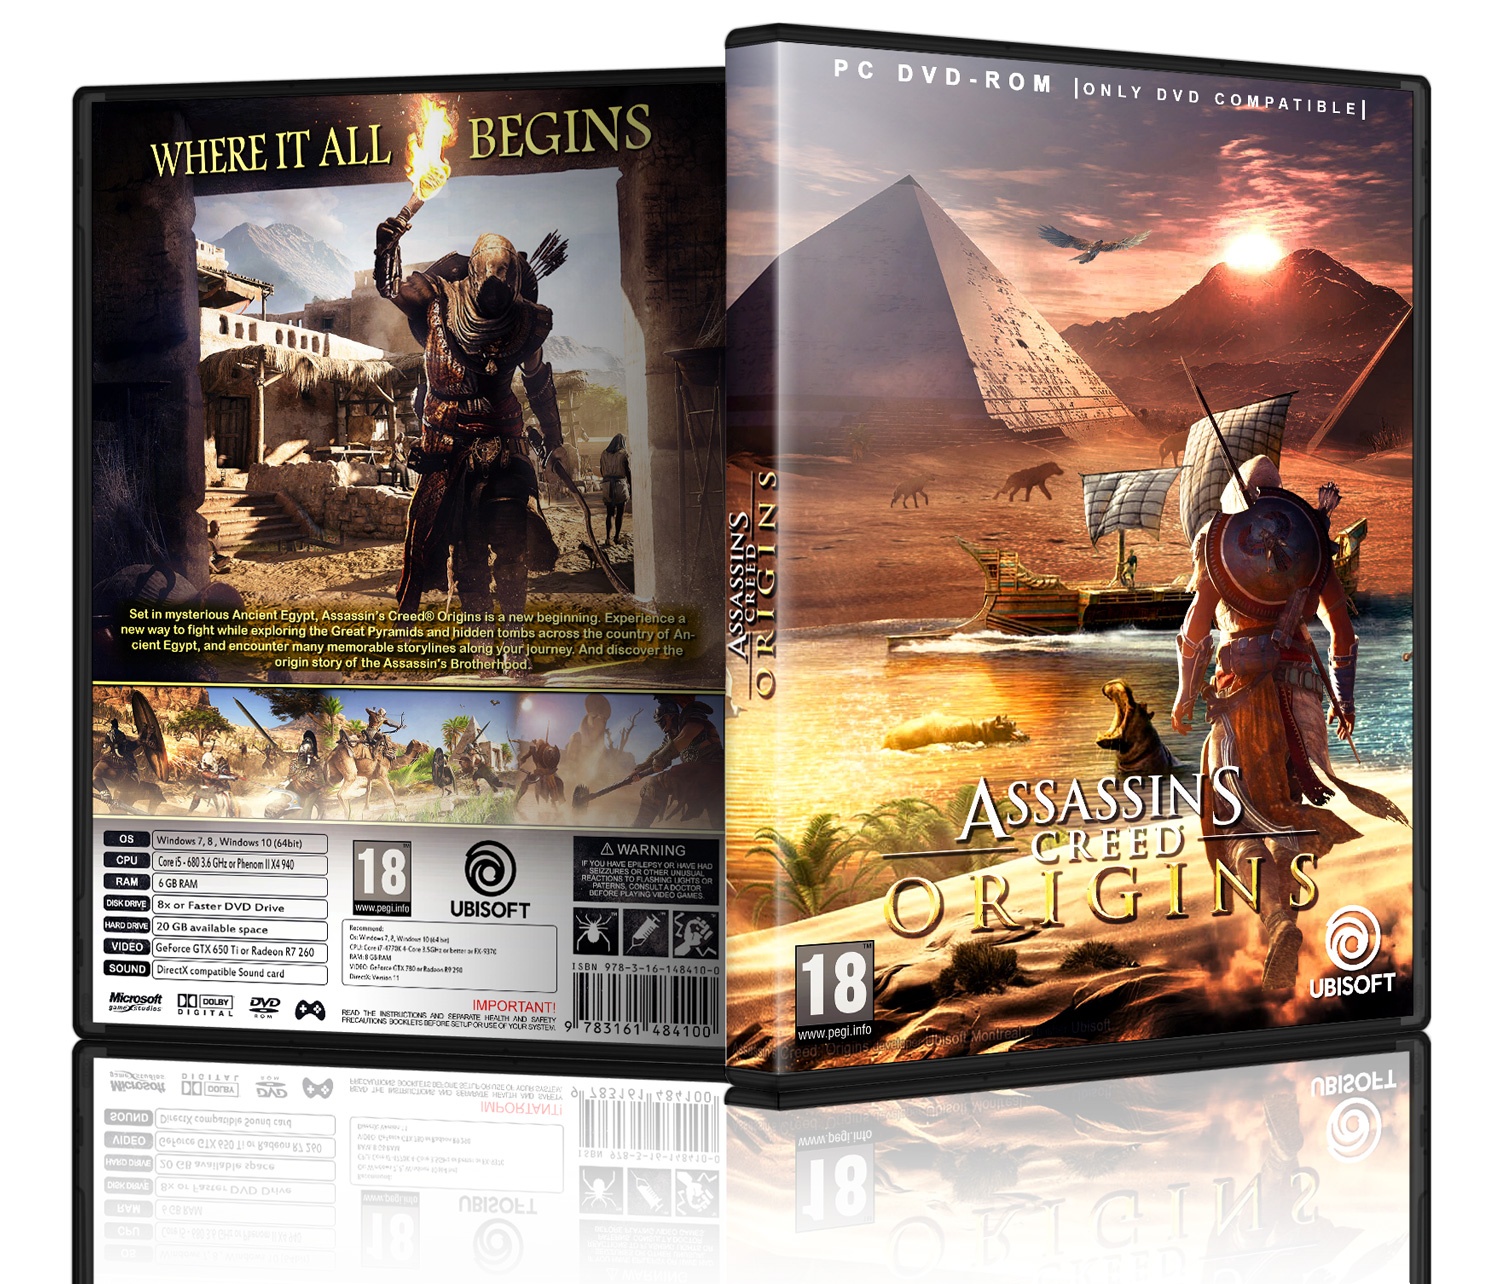 Assassins Creed Origins box cover